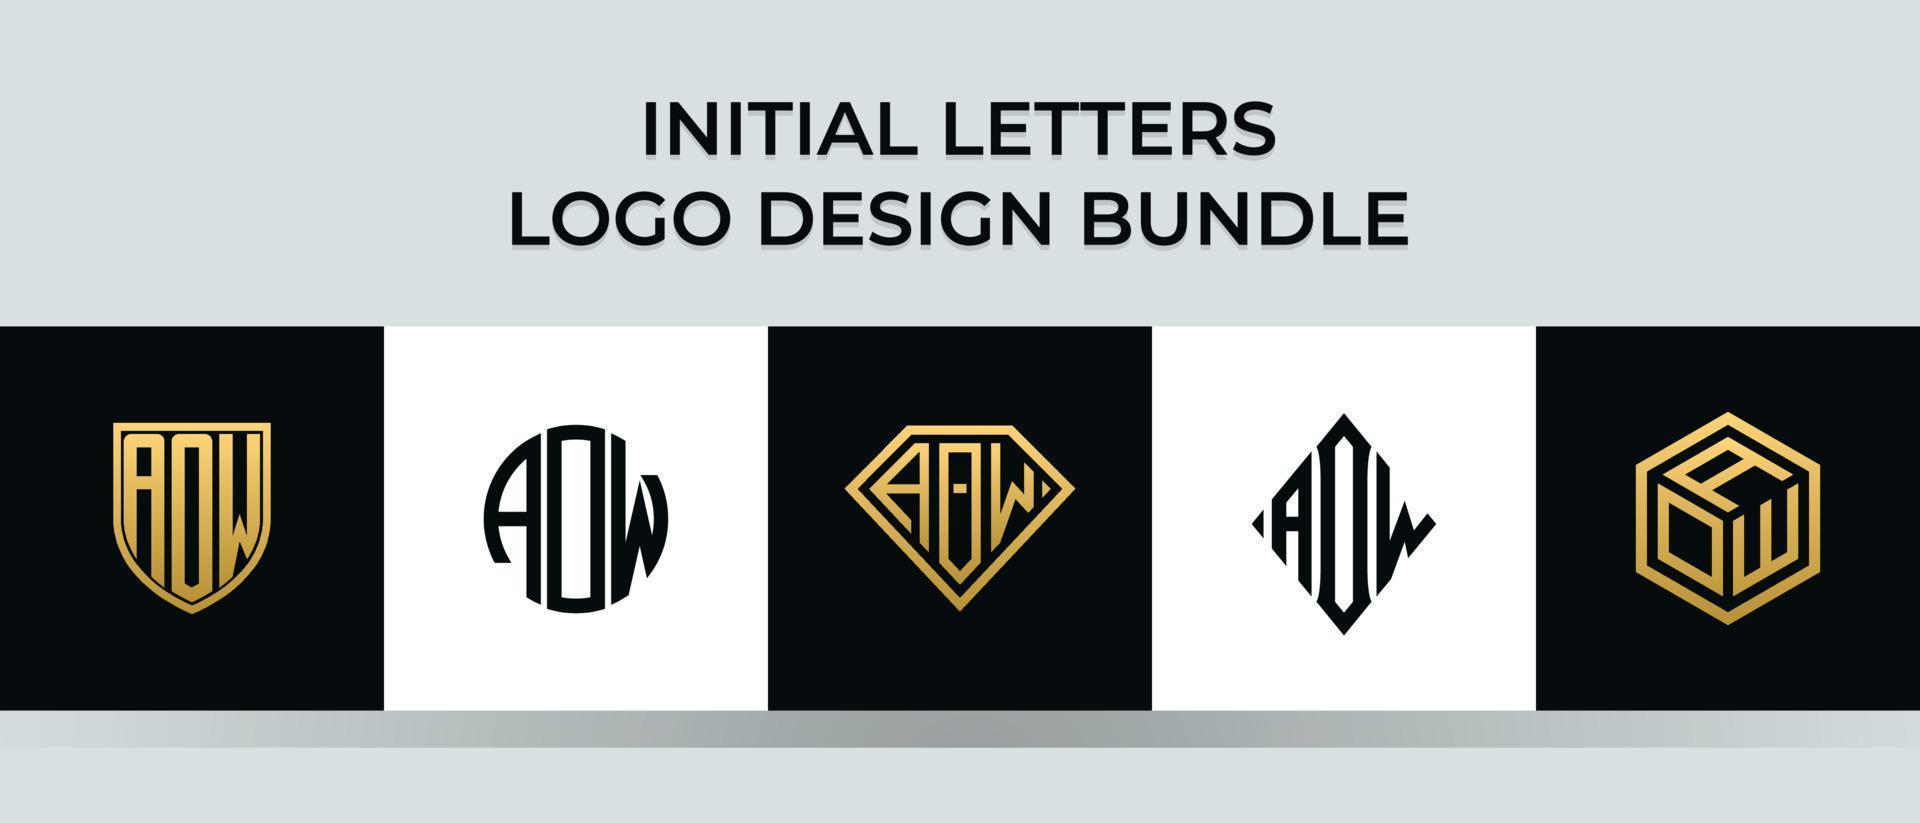 letras iniciales aow logo diseños paquete vector